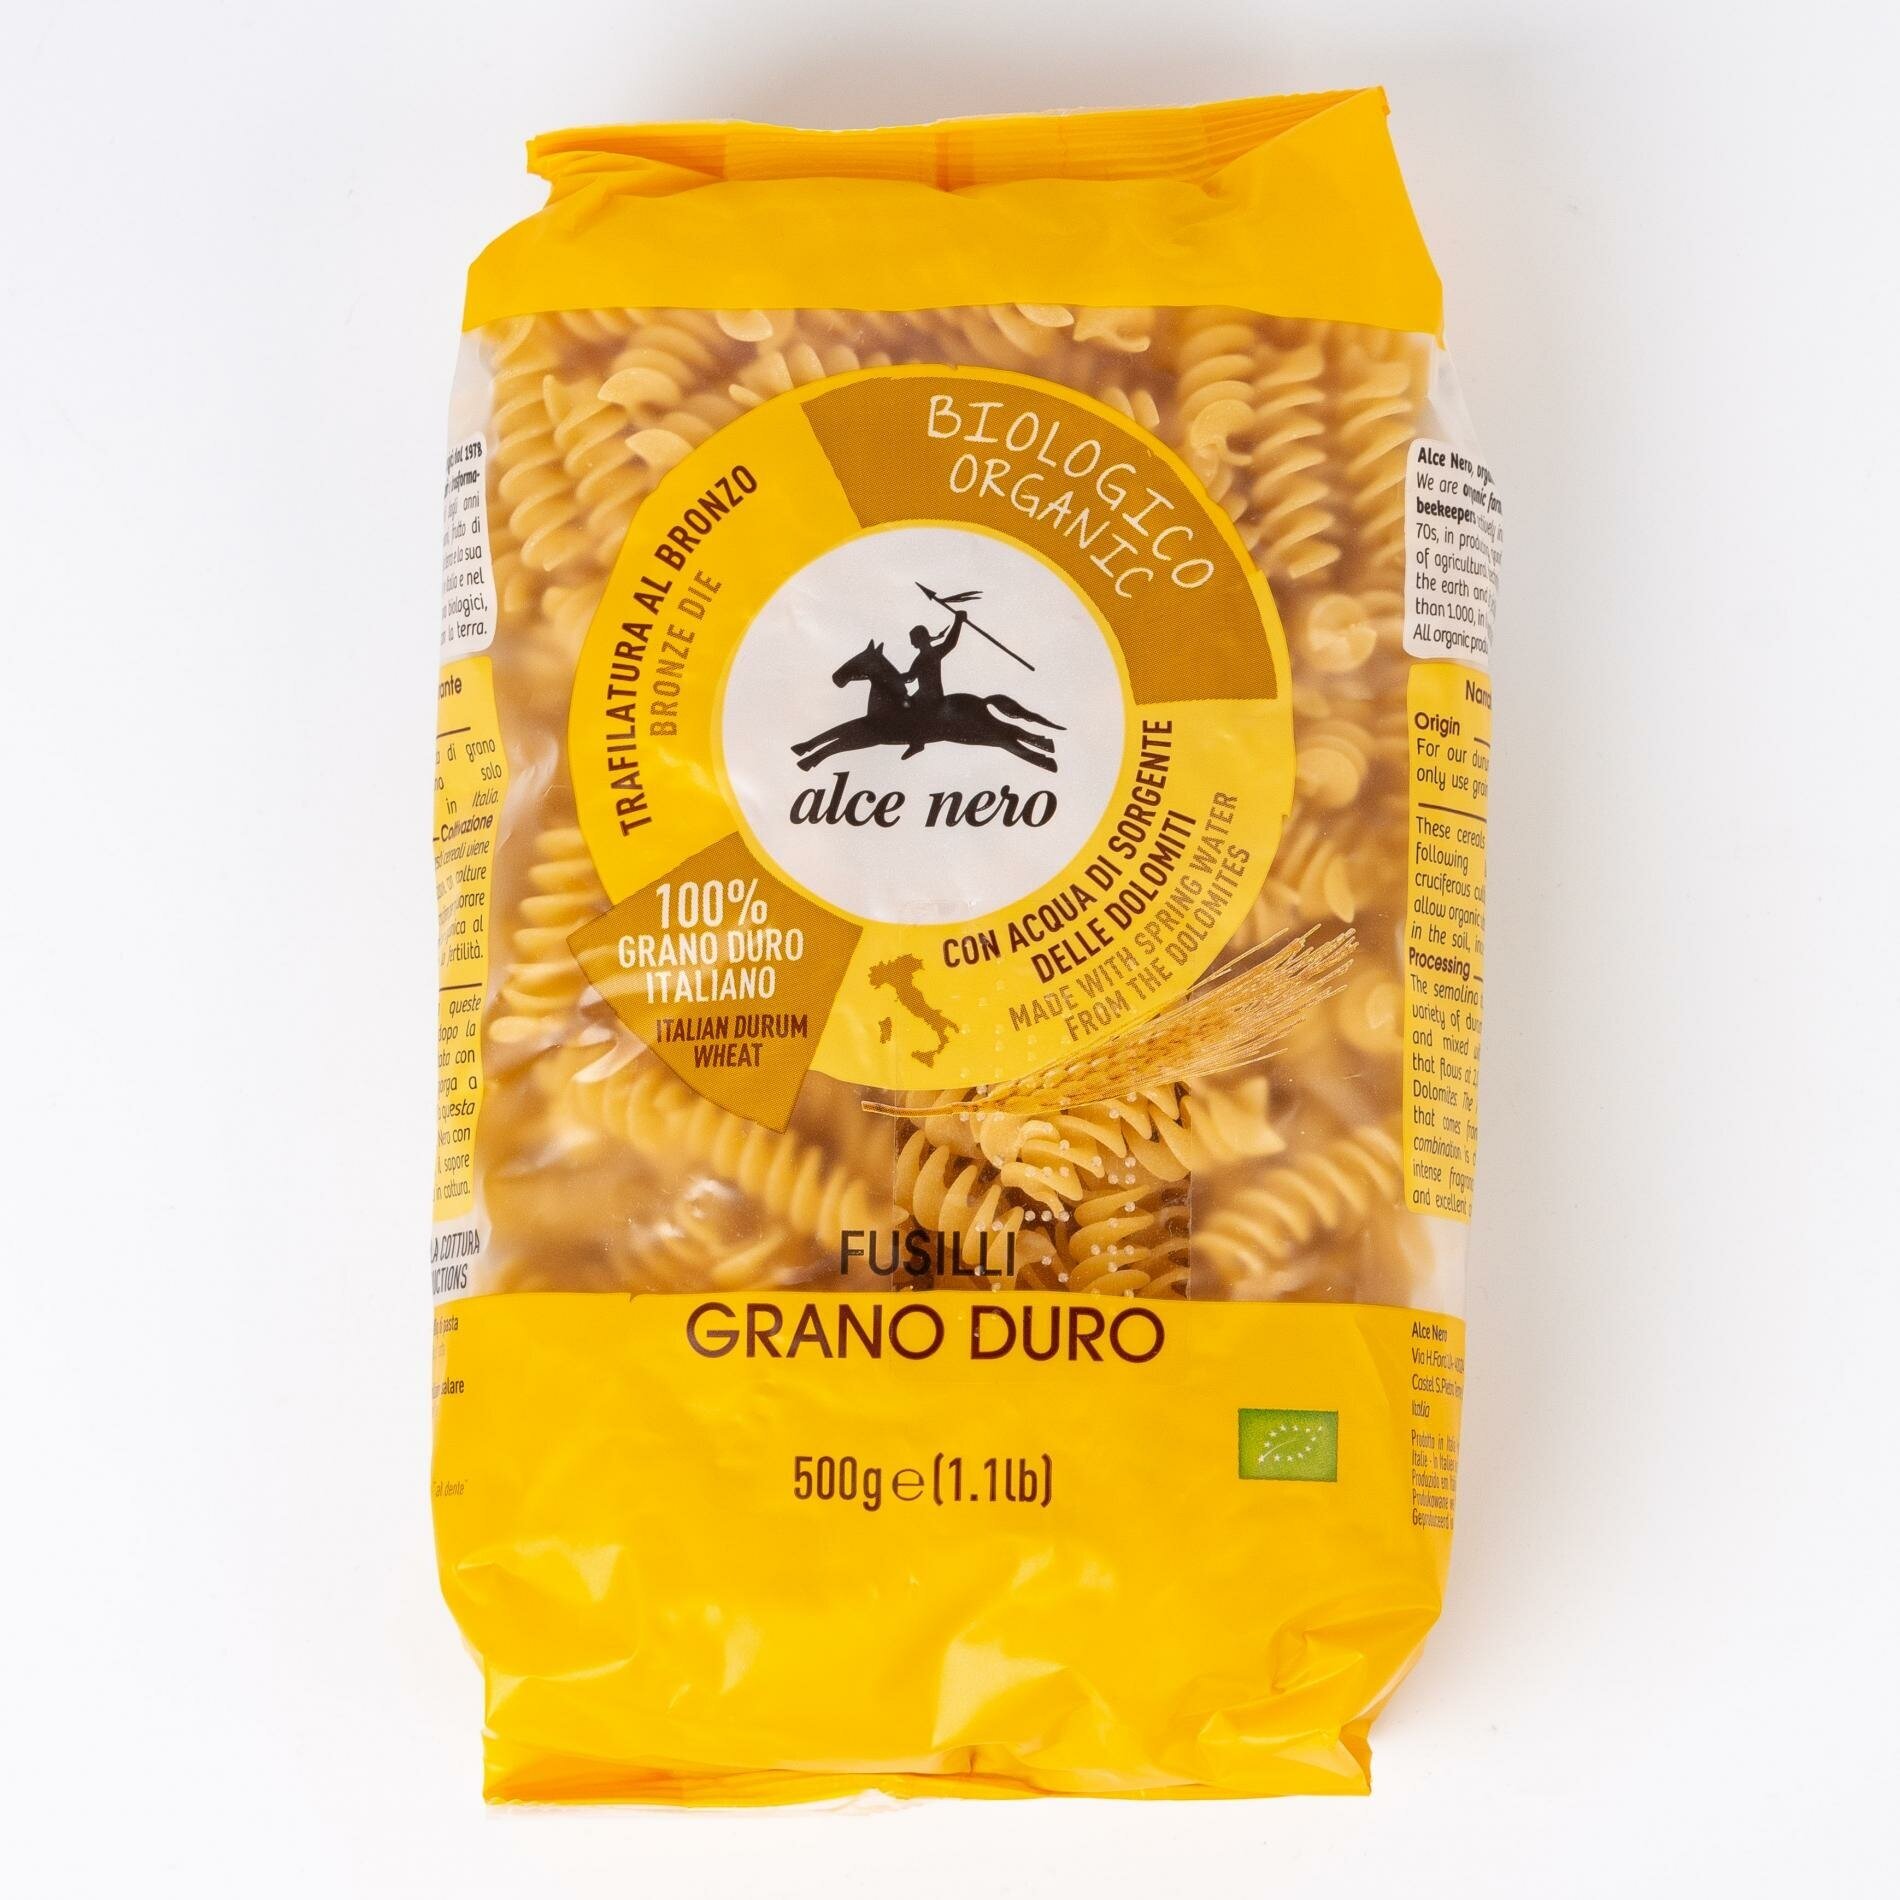 Alce Nero фузилли БИО макаронные изделия из твердых сортов пшеницы, полимерная упаковка 500 г